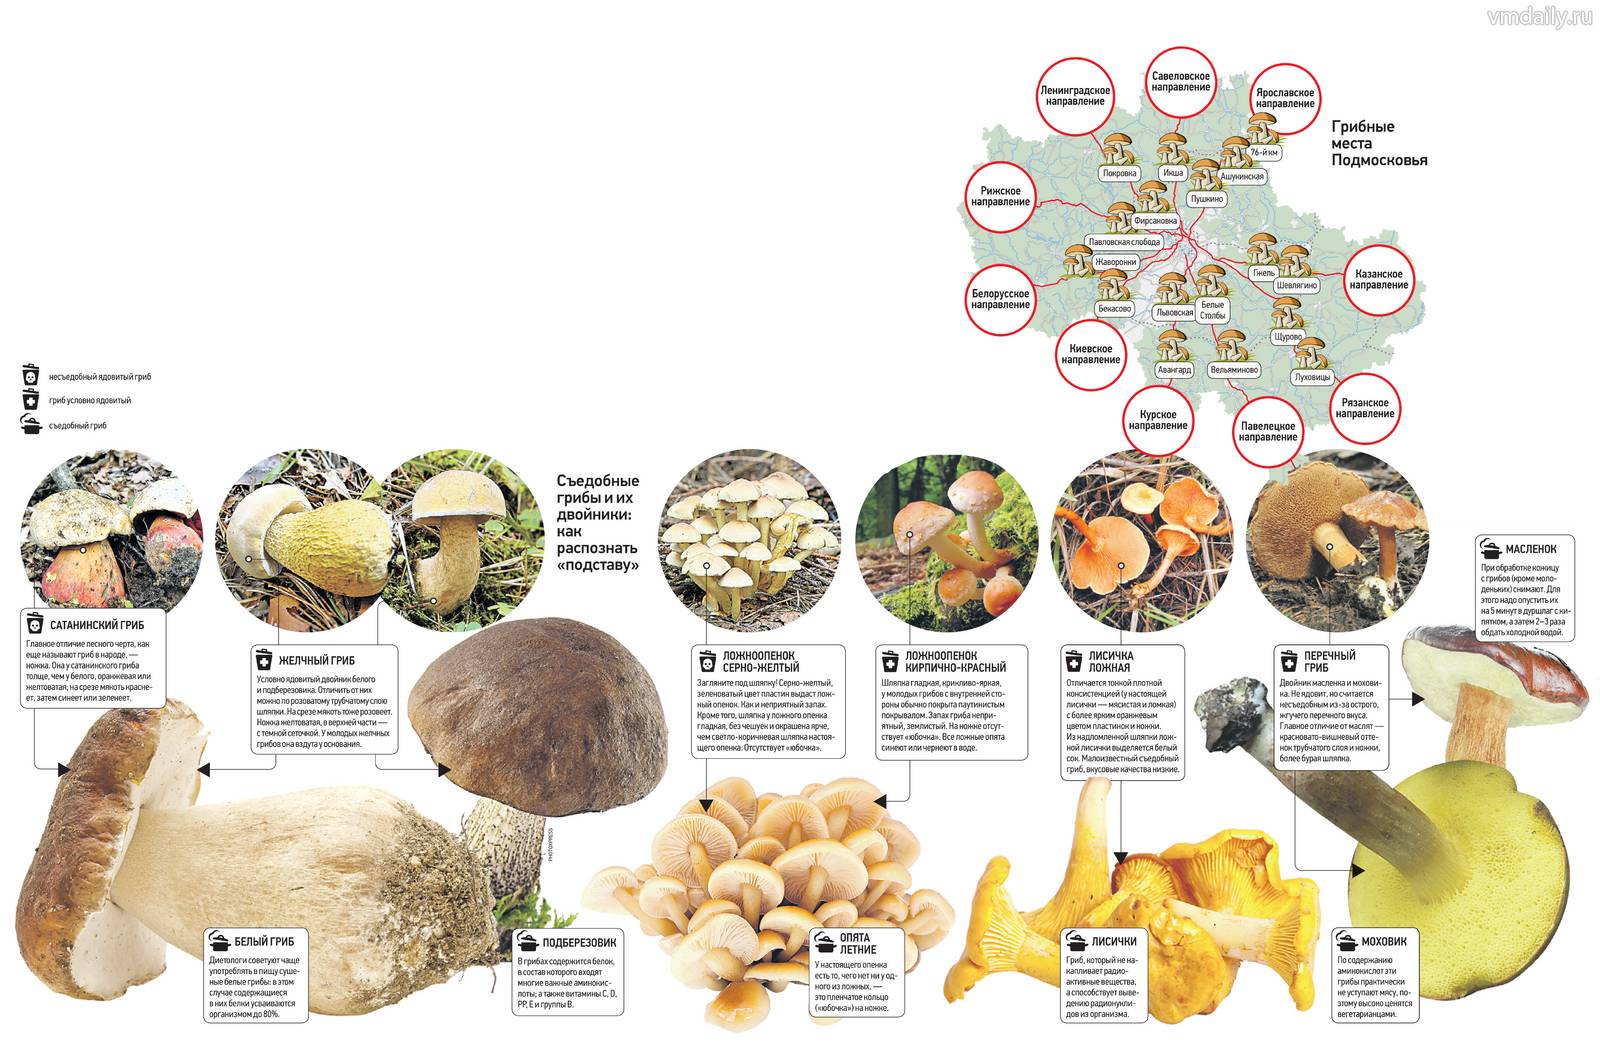 Где лучше собирать грибы в подмосковье в 2020 году: карта грибных мест подмосковья 2020